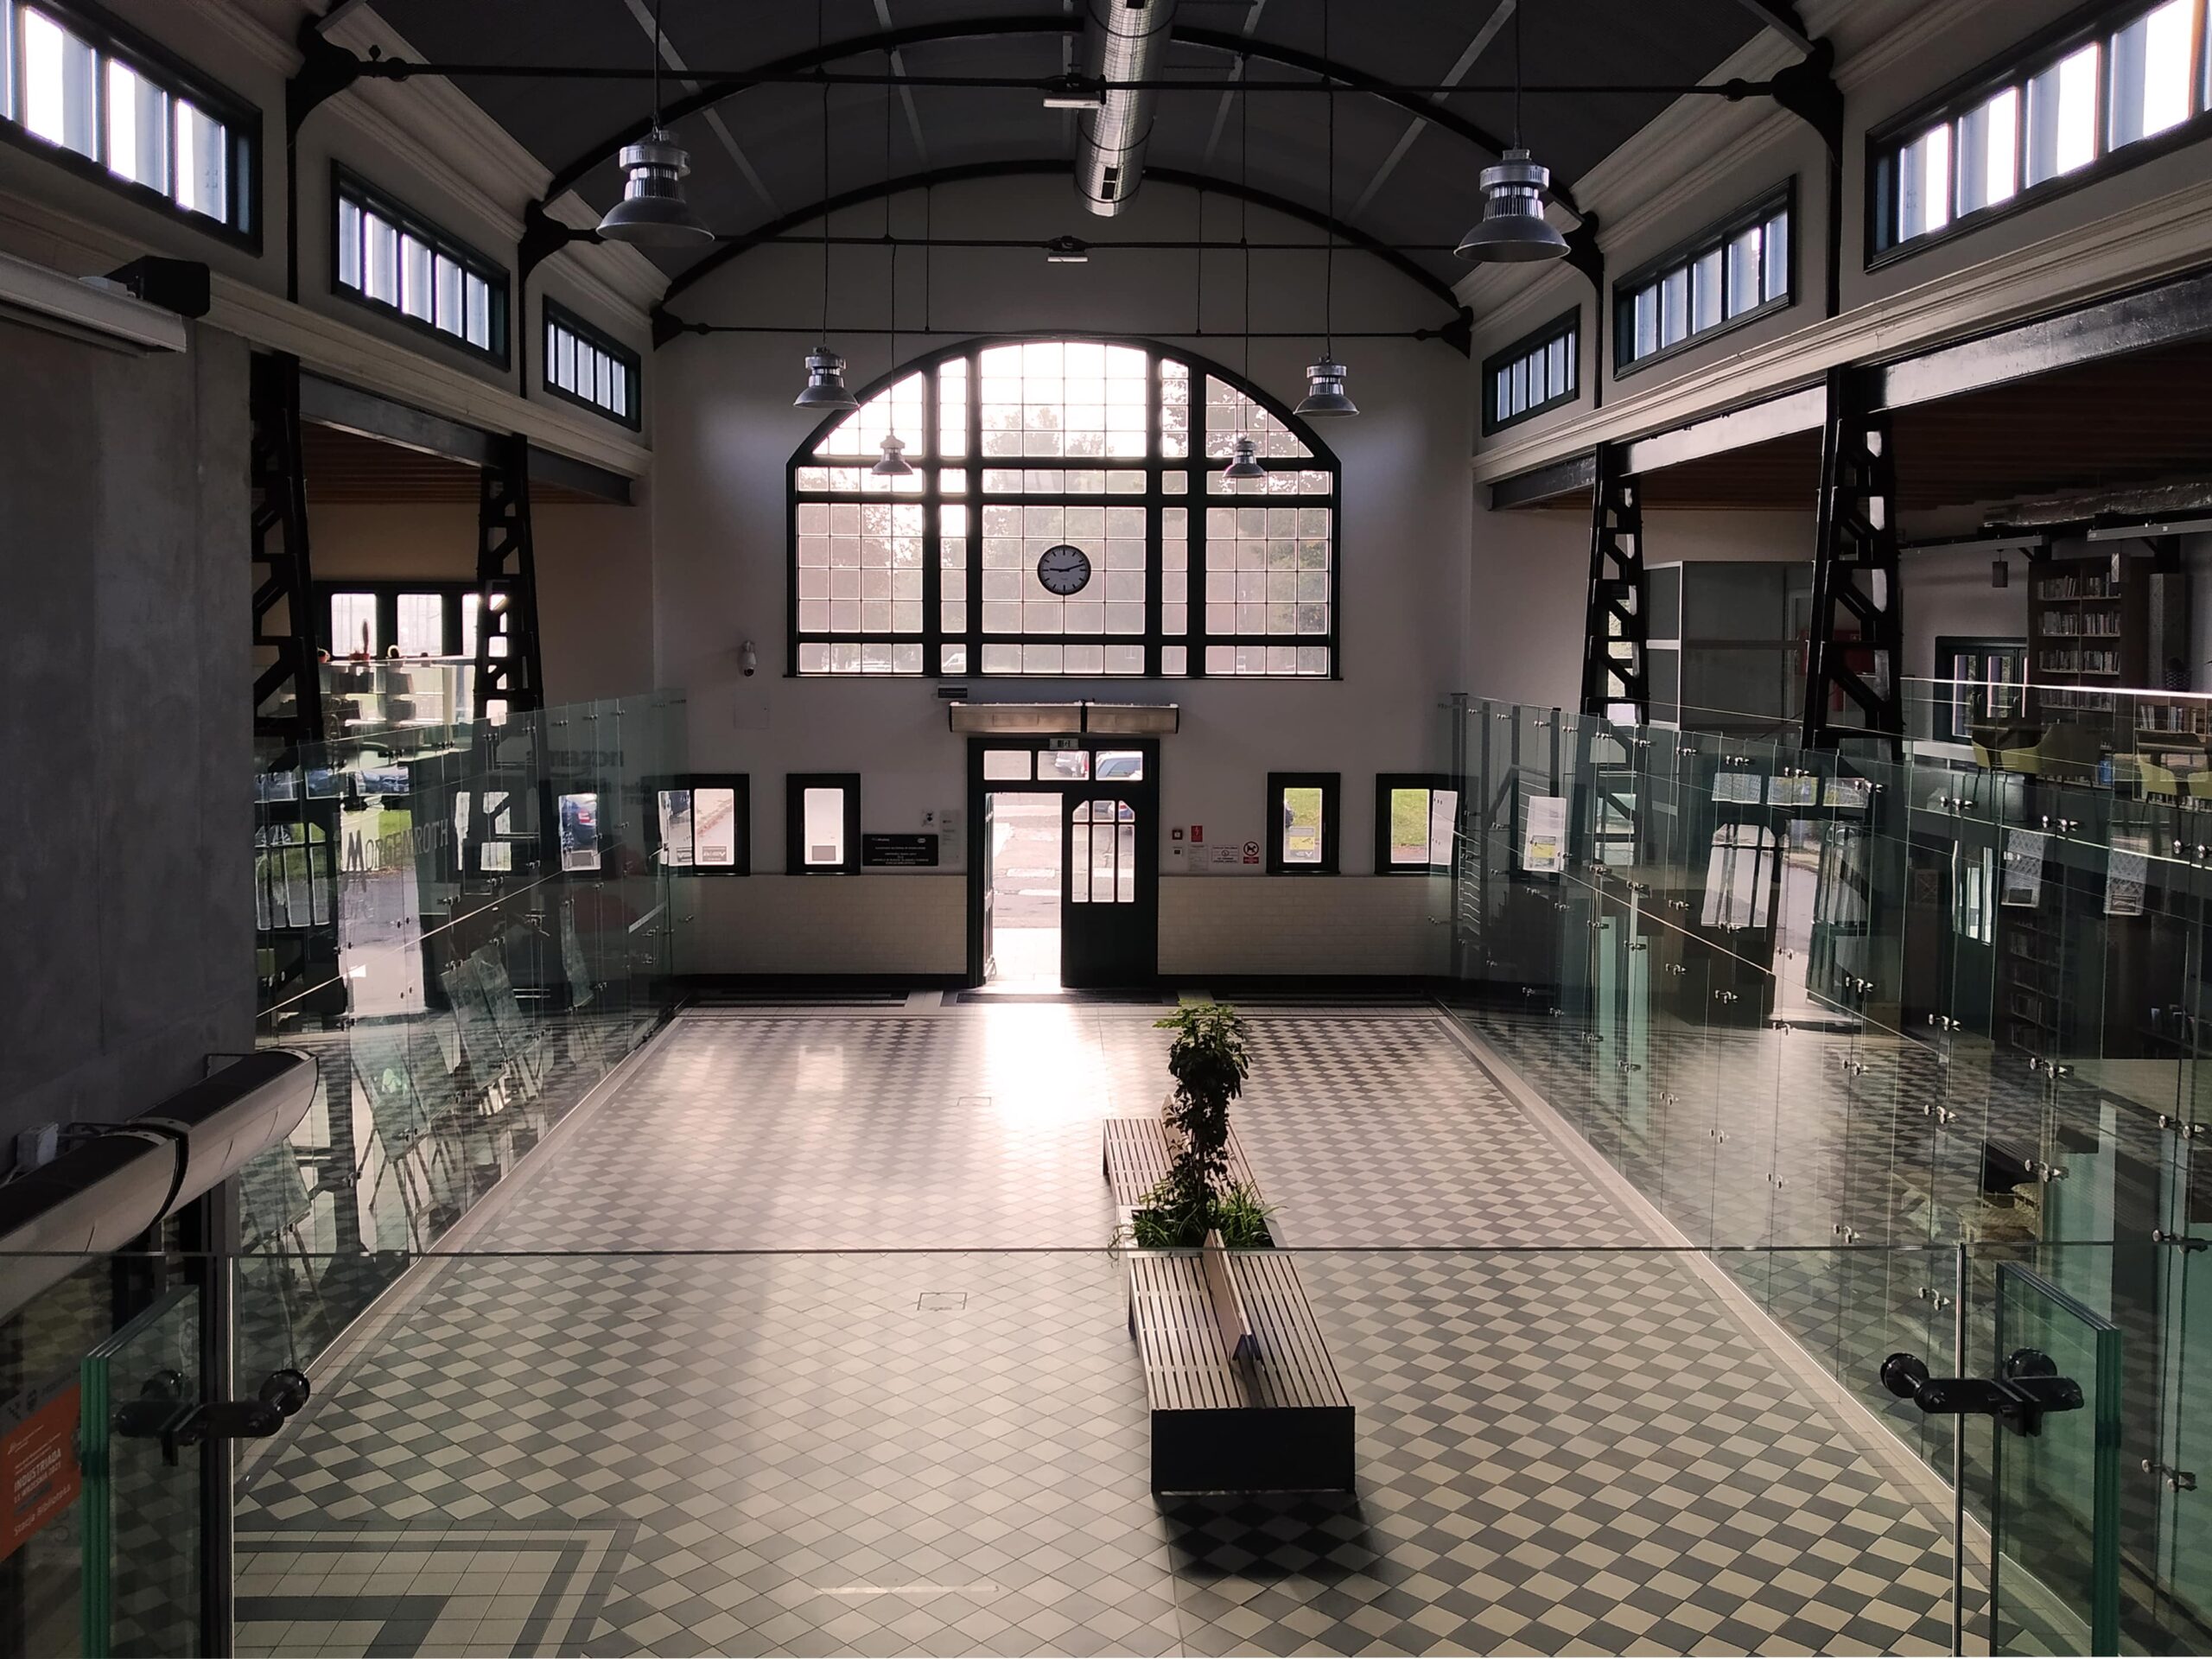 Stacja Biblioteka – biblioteka w Rudzie Śląskiej – Chebziu